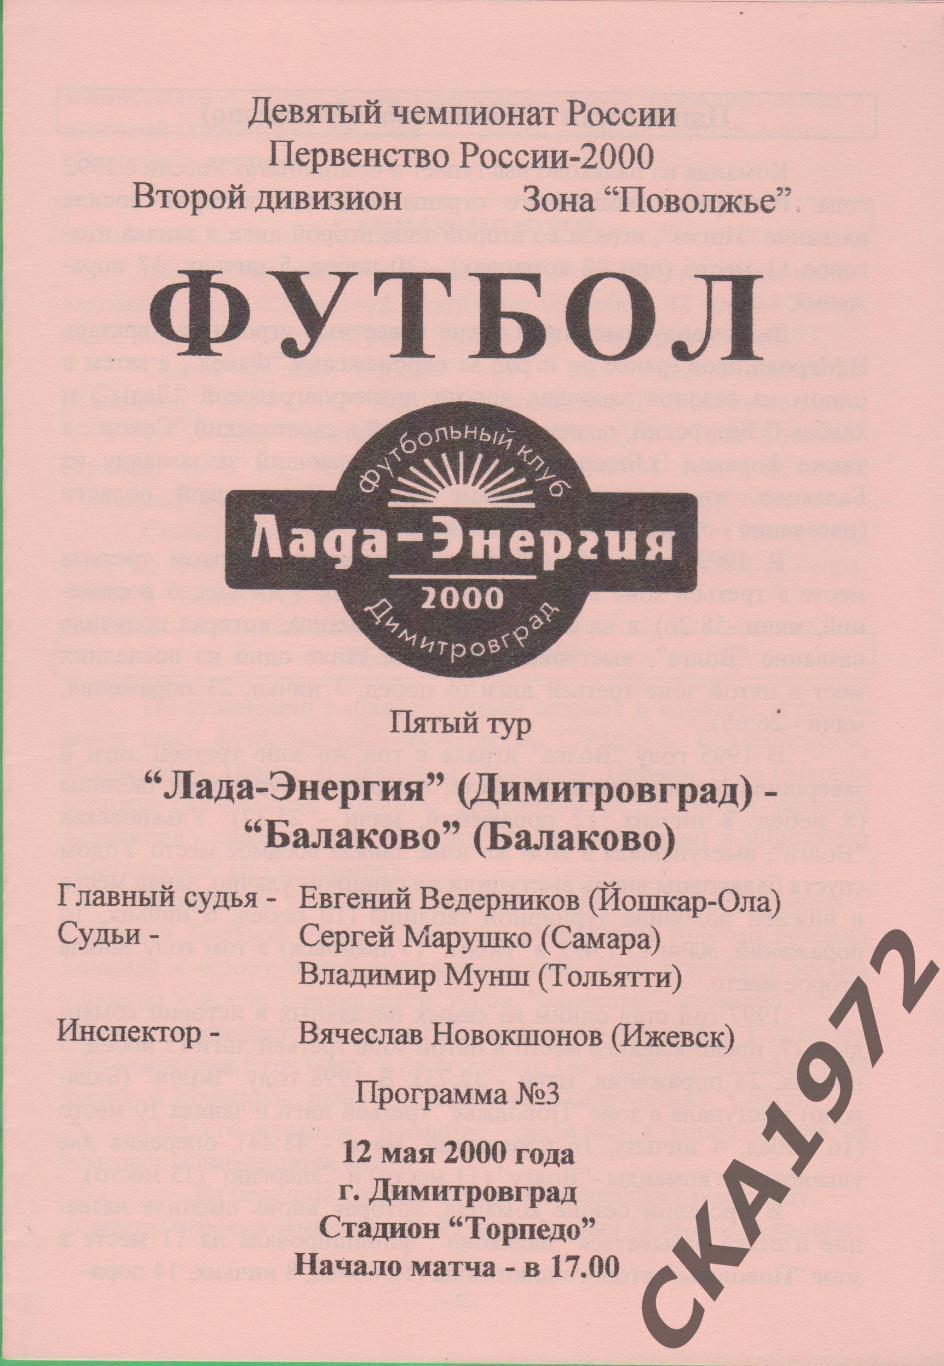 программа Лада Димитровград - Балаково Балаково 2000